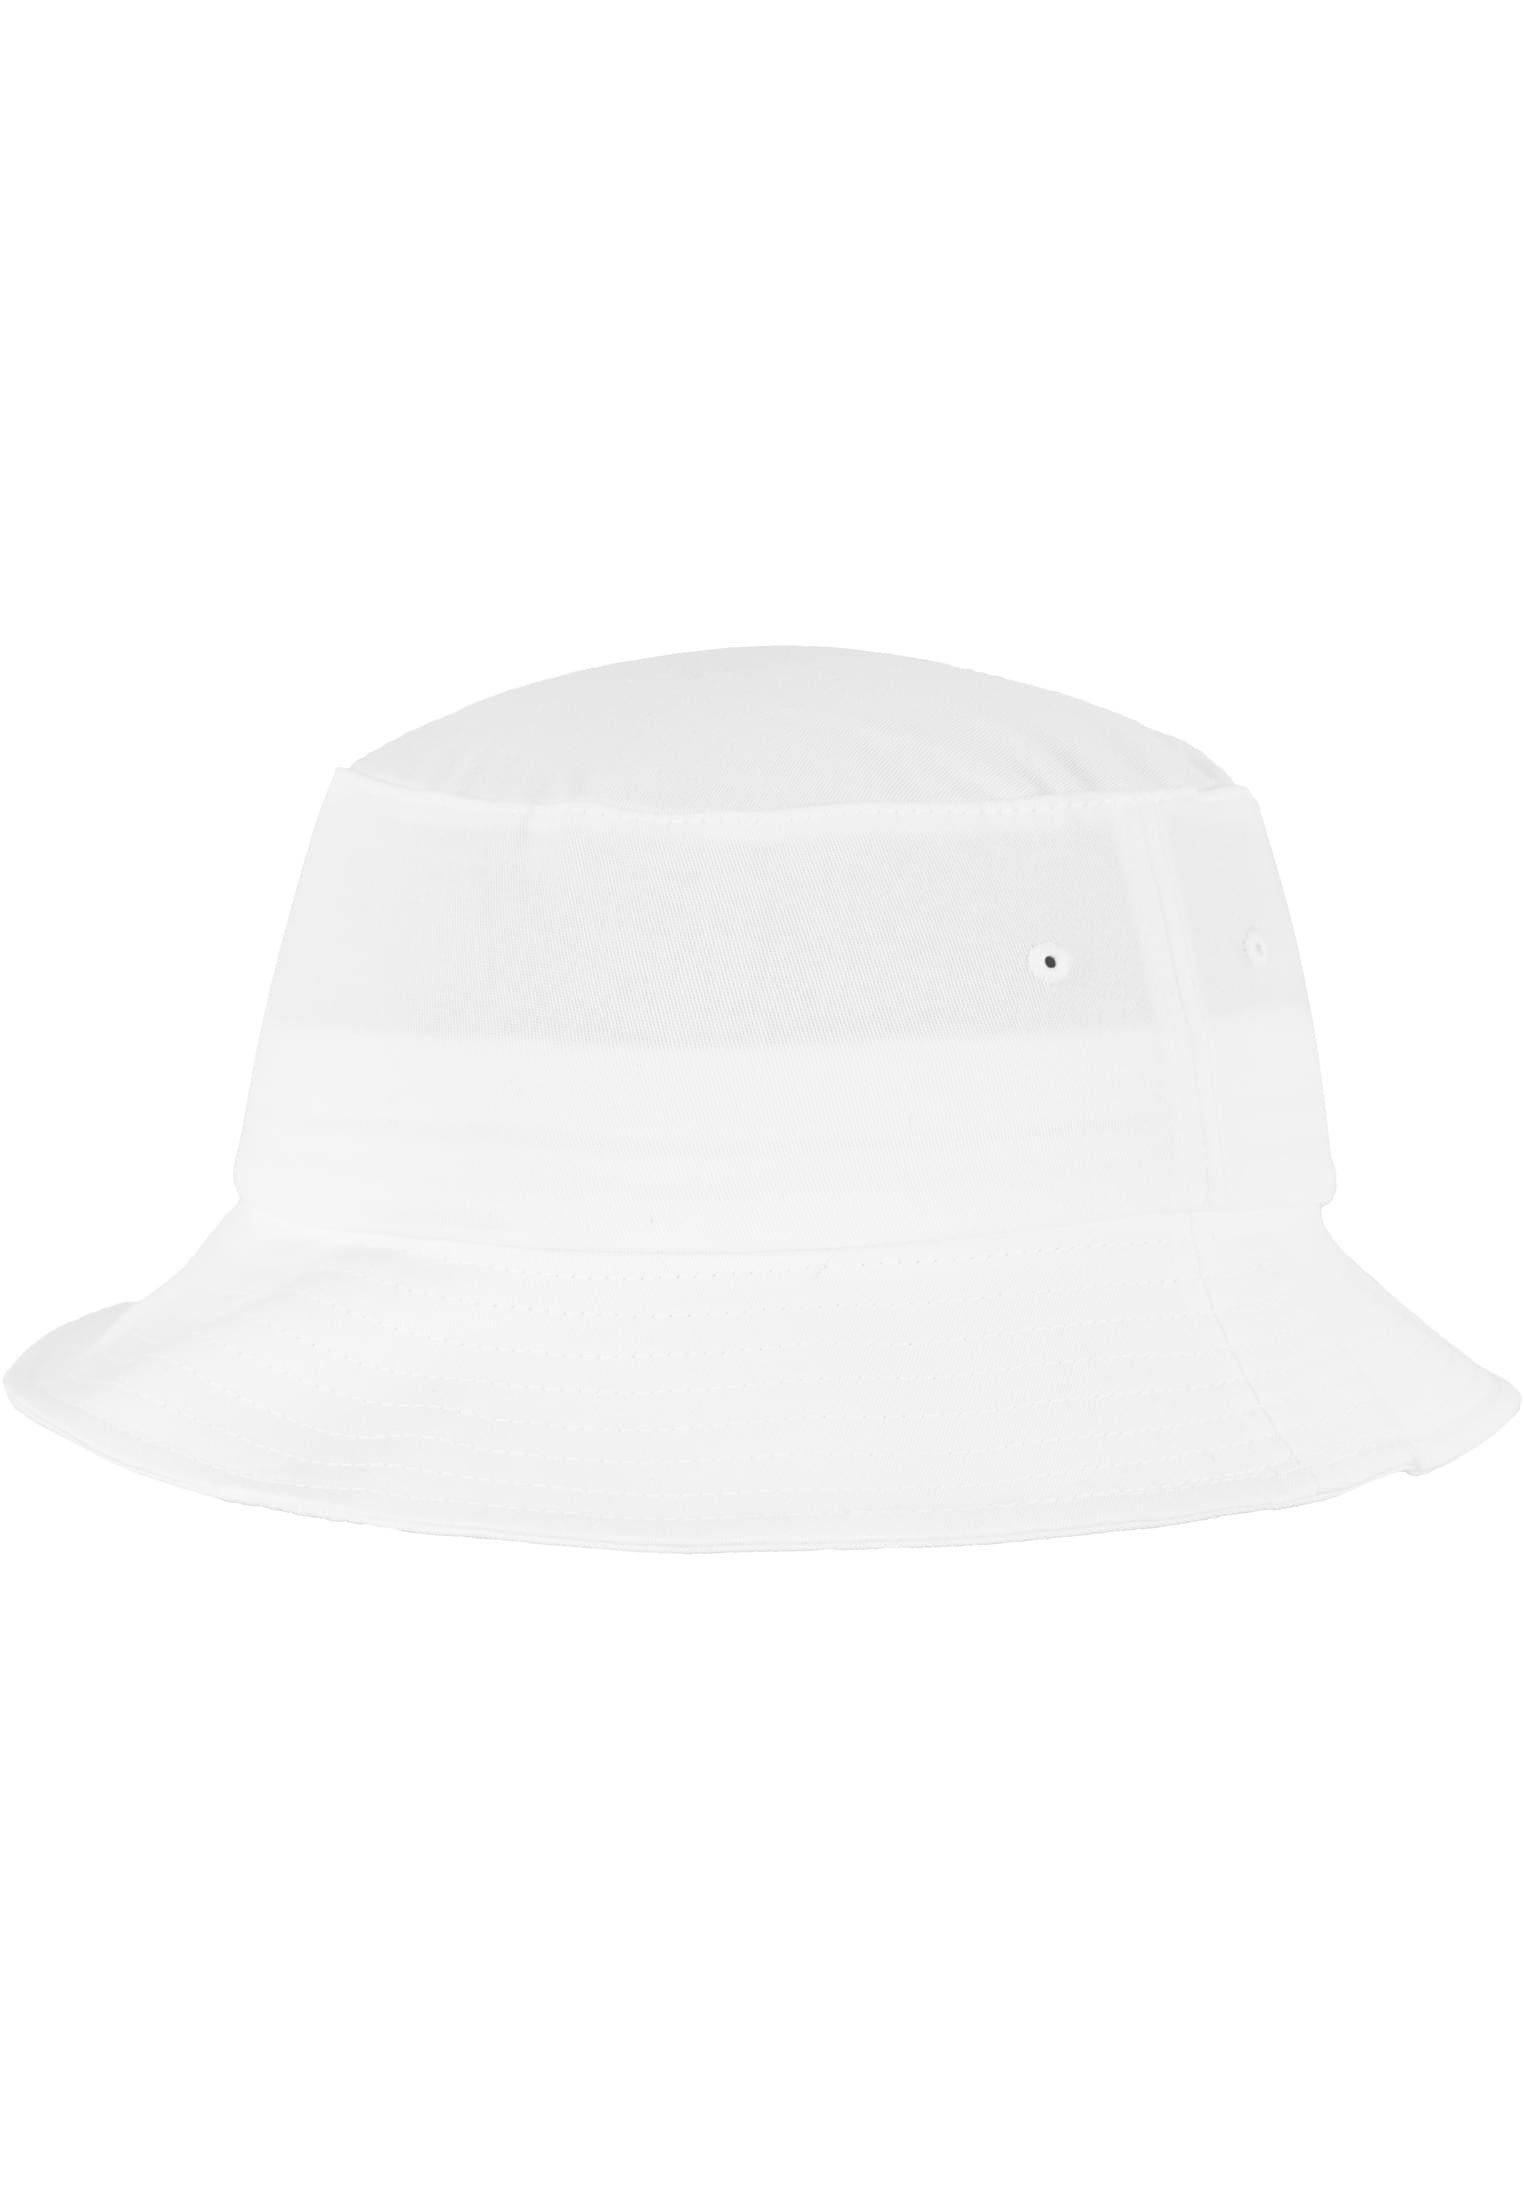 Cap Accessoires Bucket Hat white Flexfit Flexfit Twill Flex Cotton